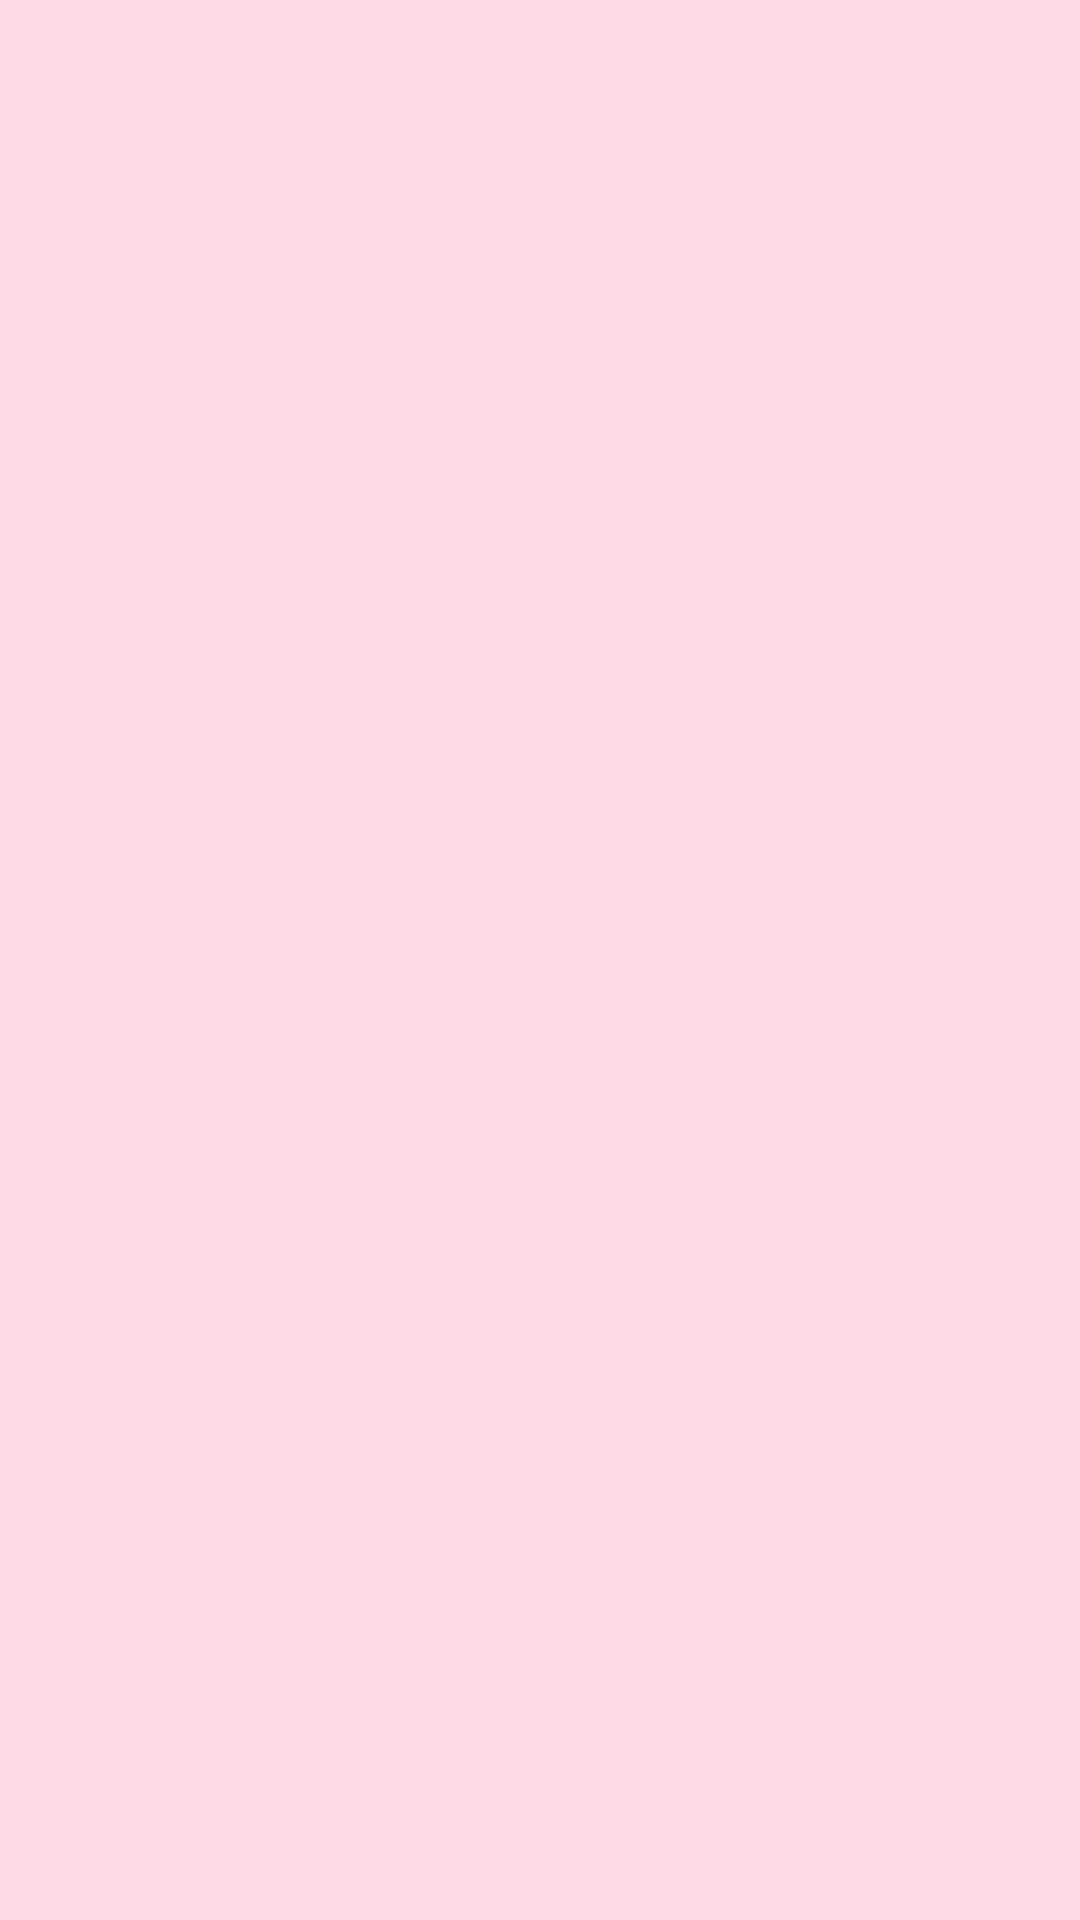 En minimalistisk billede med en enkel tilføjelse af pink farve. Wallpaper